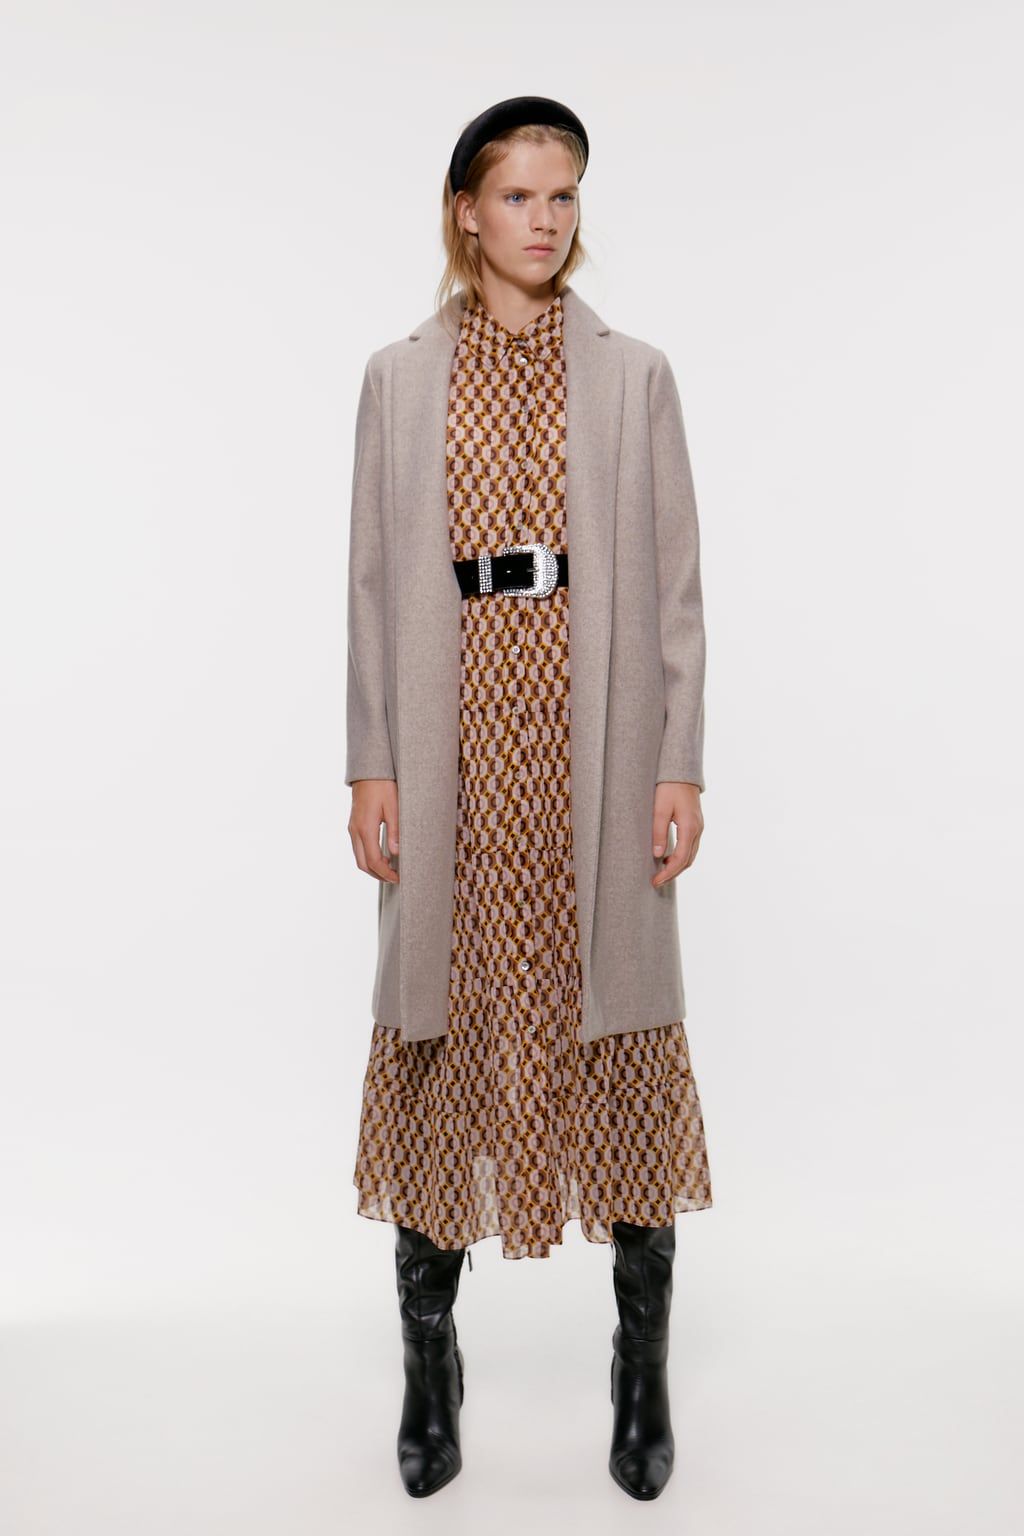 Zara coats - best Zara winter coats for 